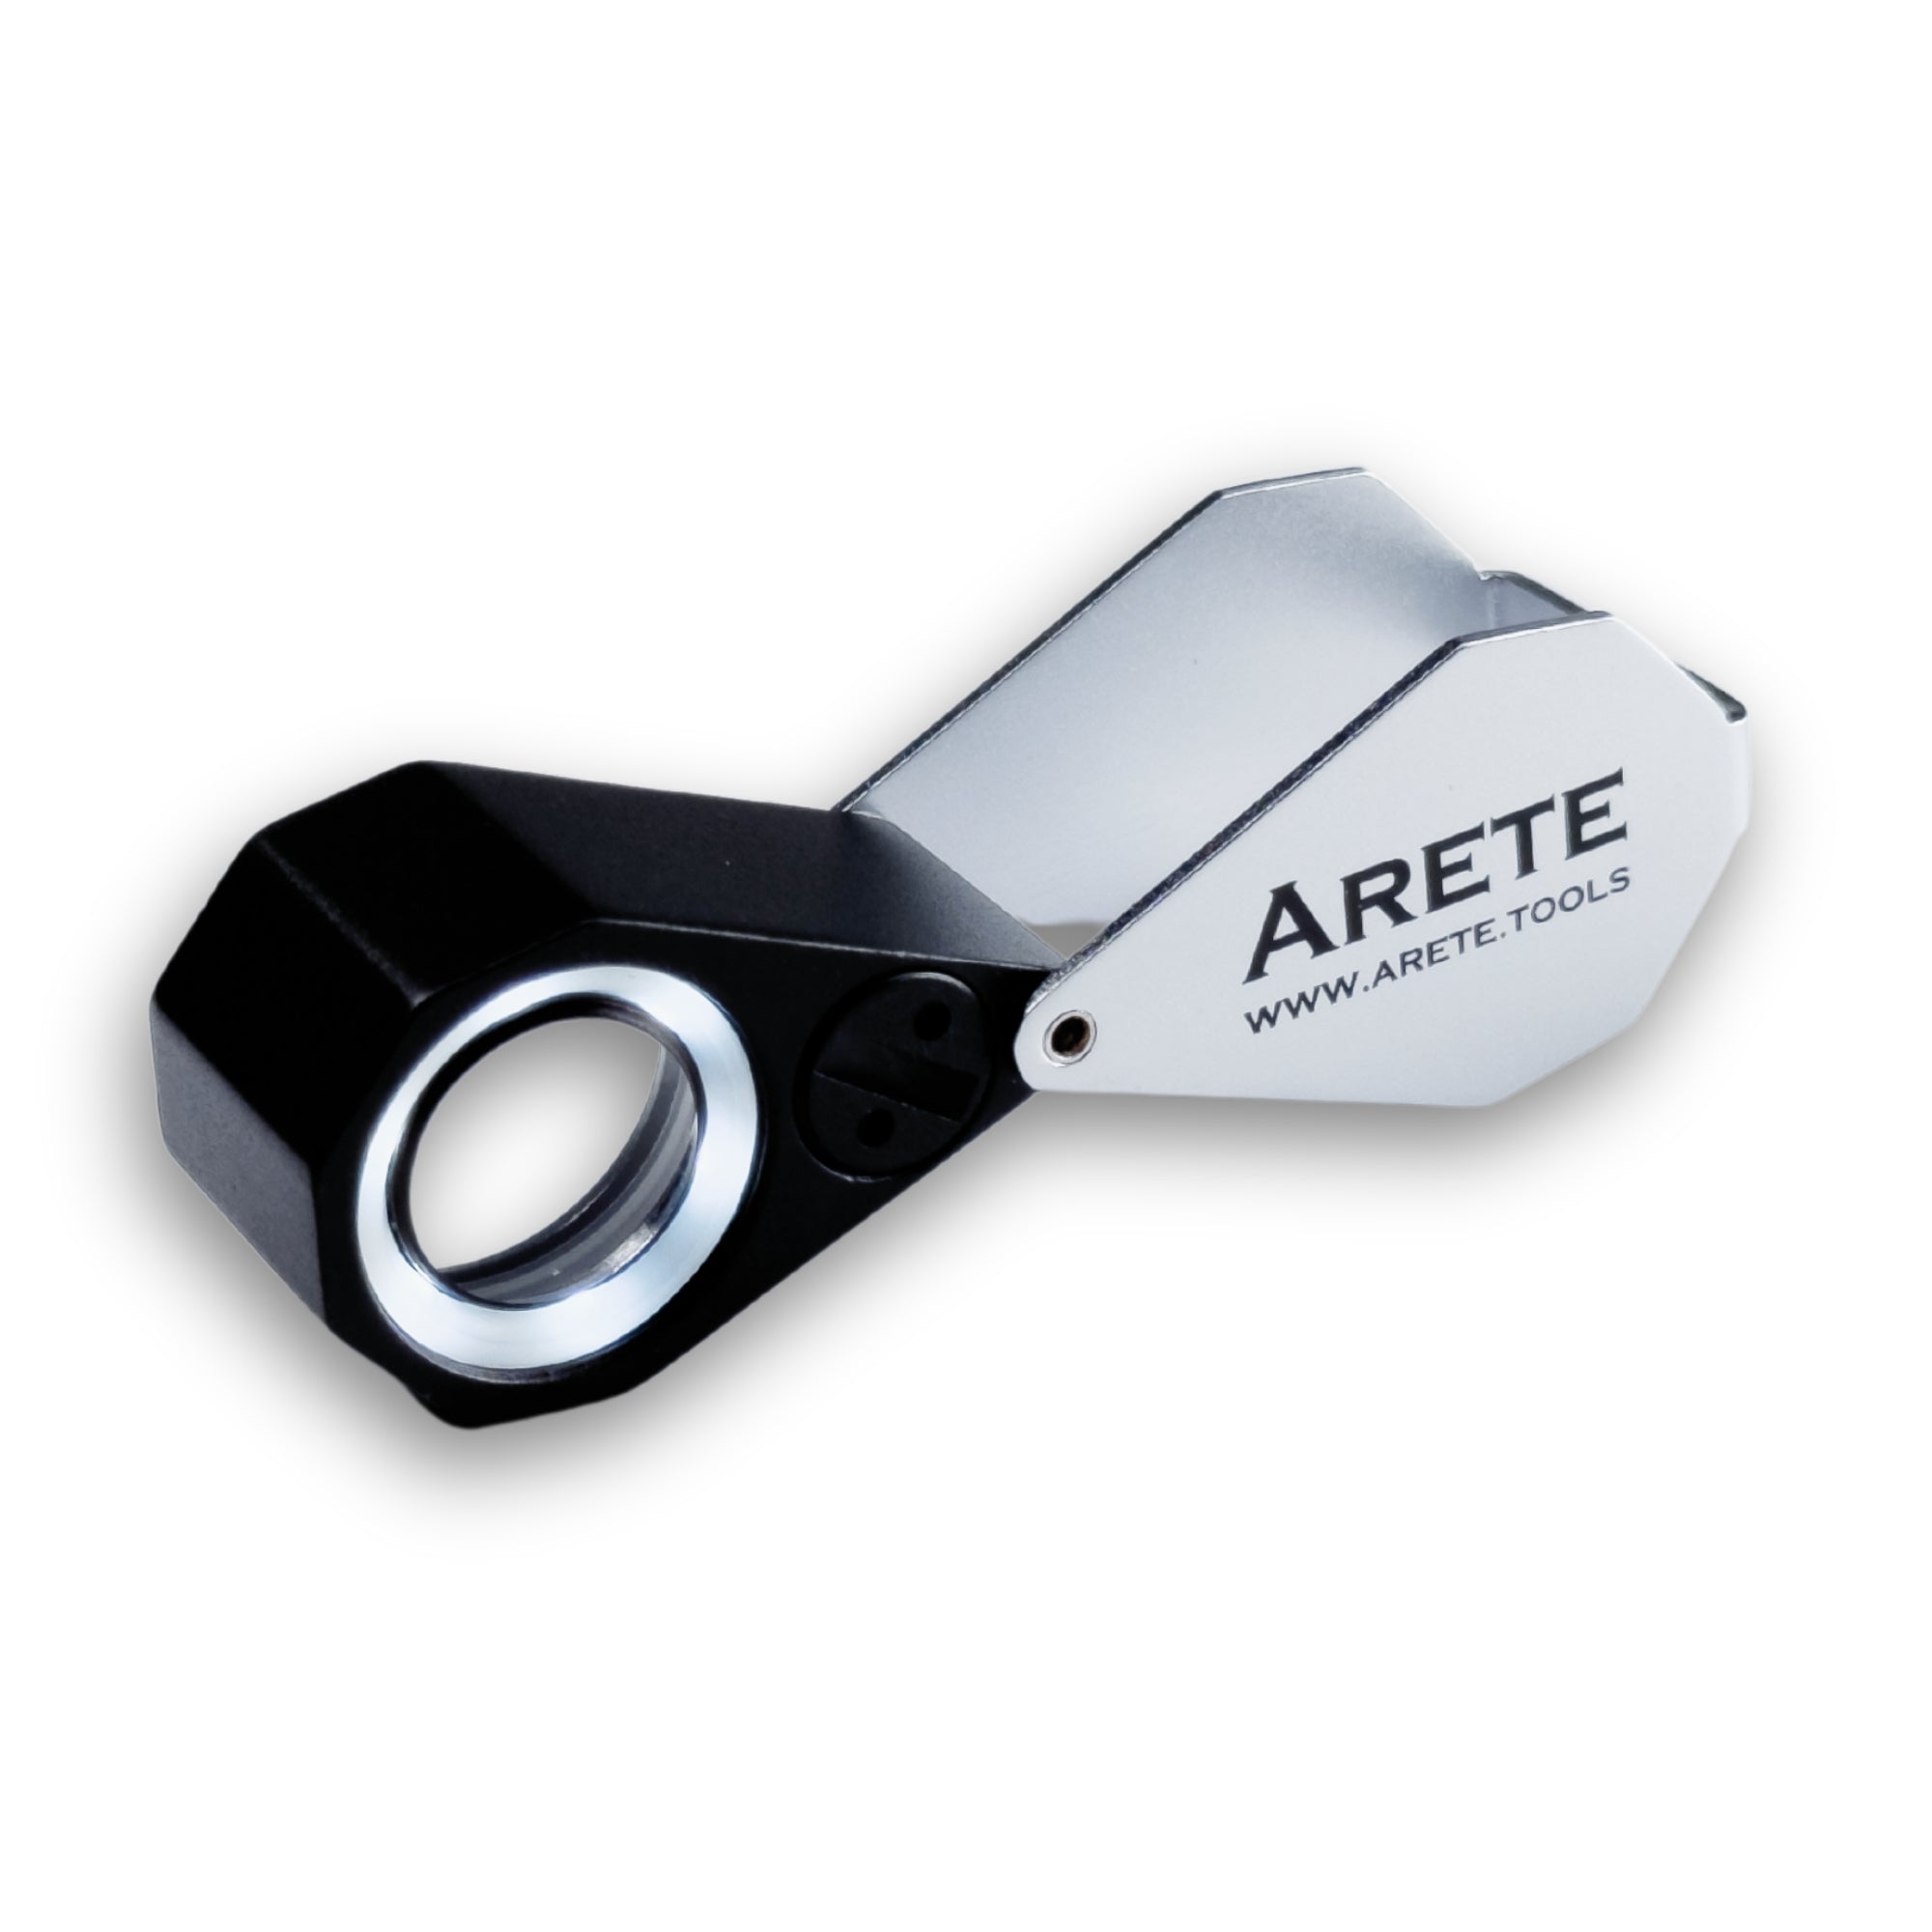 Μεγεθυντικός φακός τσέπης Arete 10x - 21mm με φως LED στις μπαταρίες